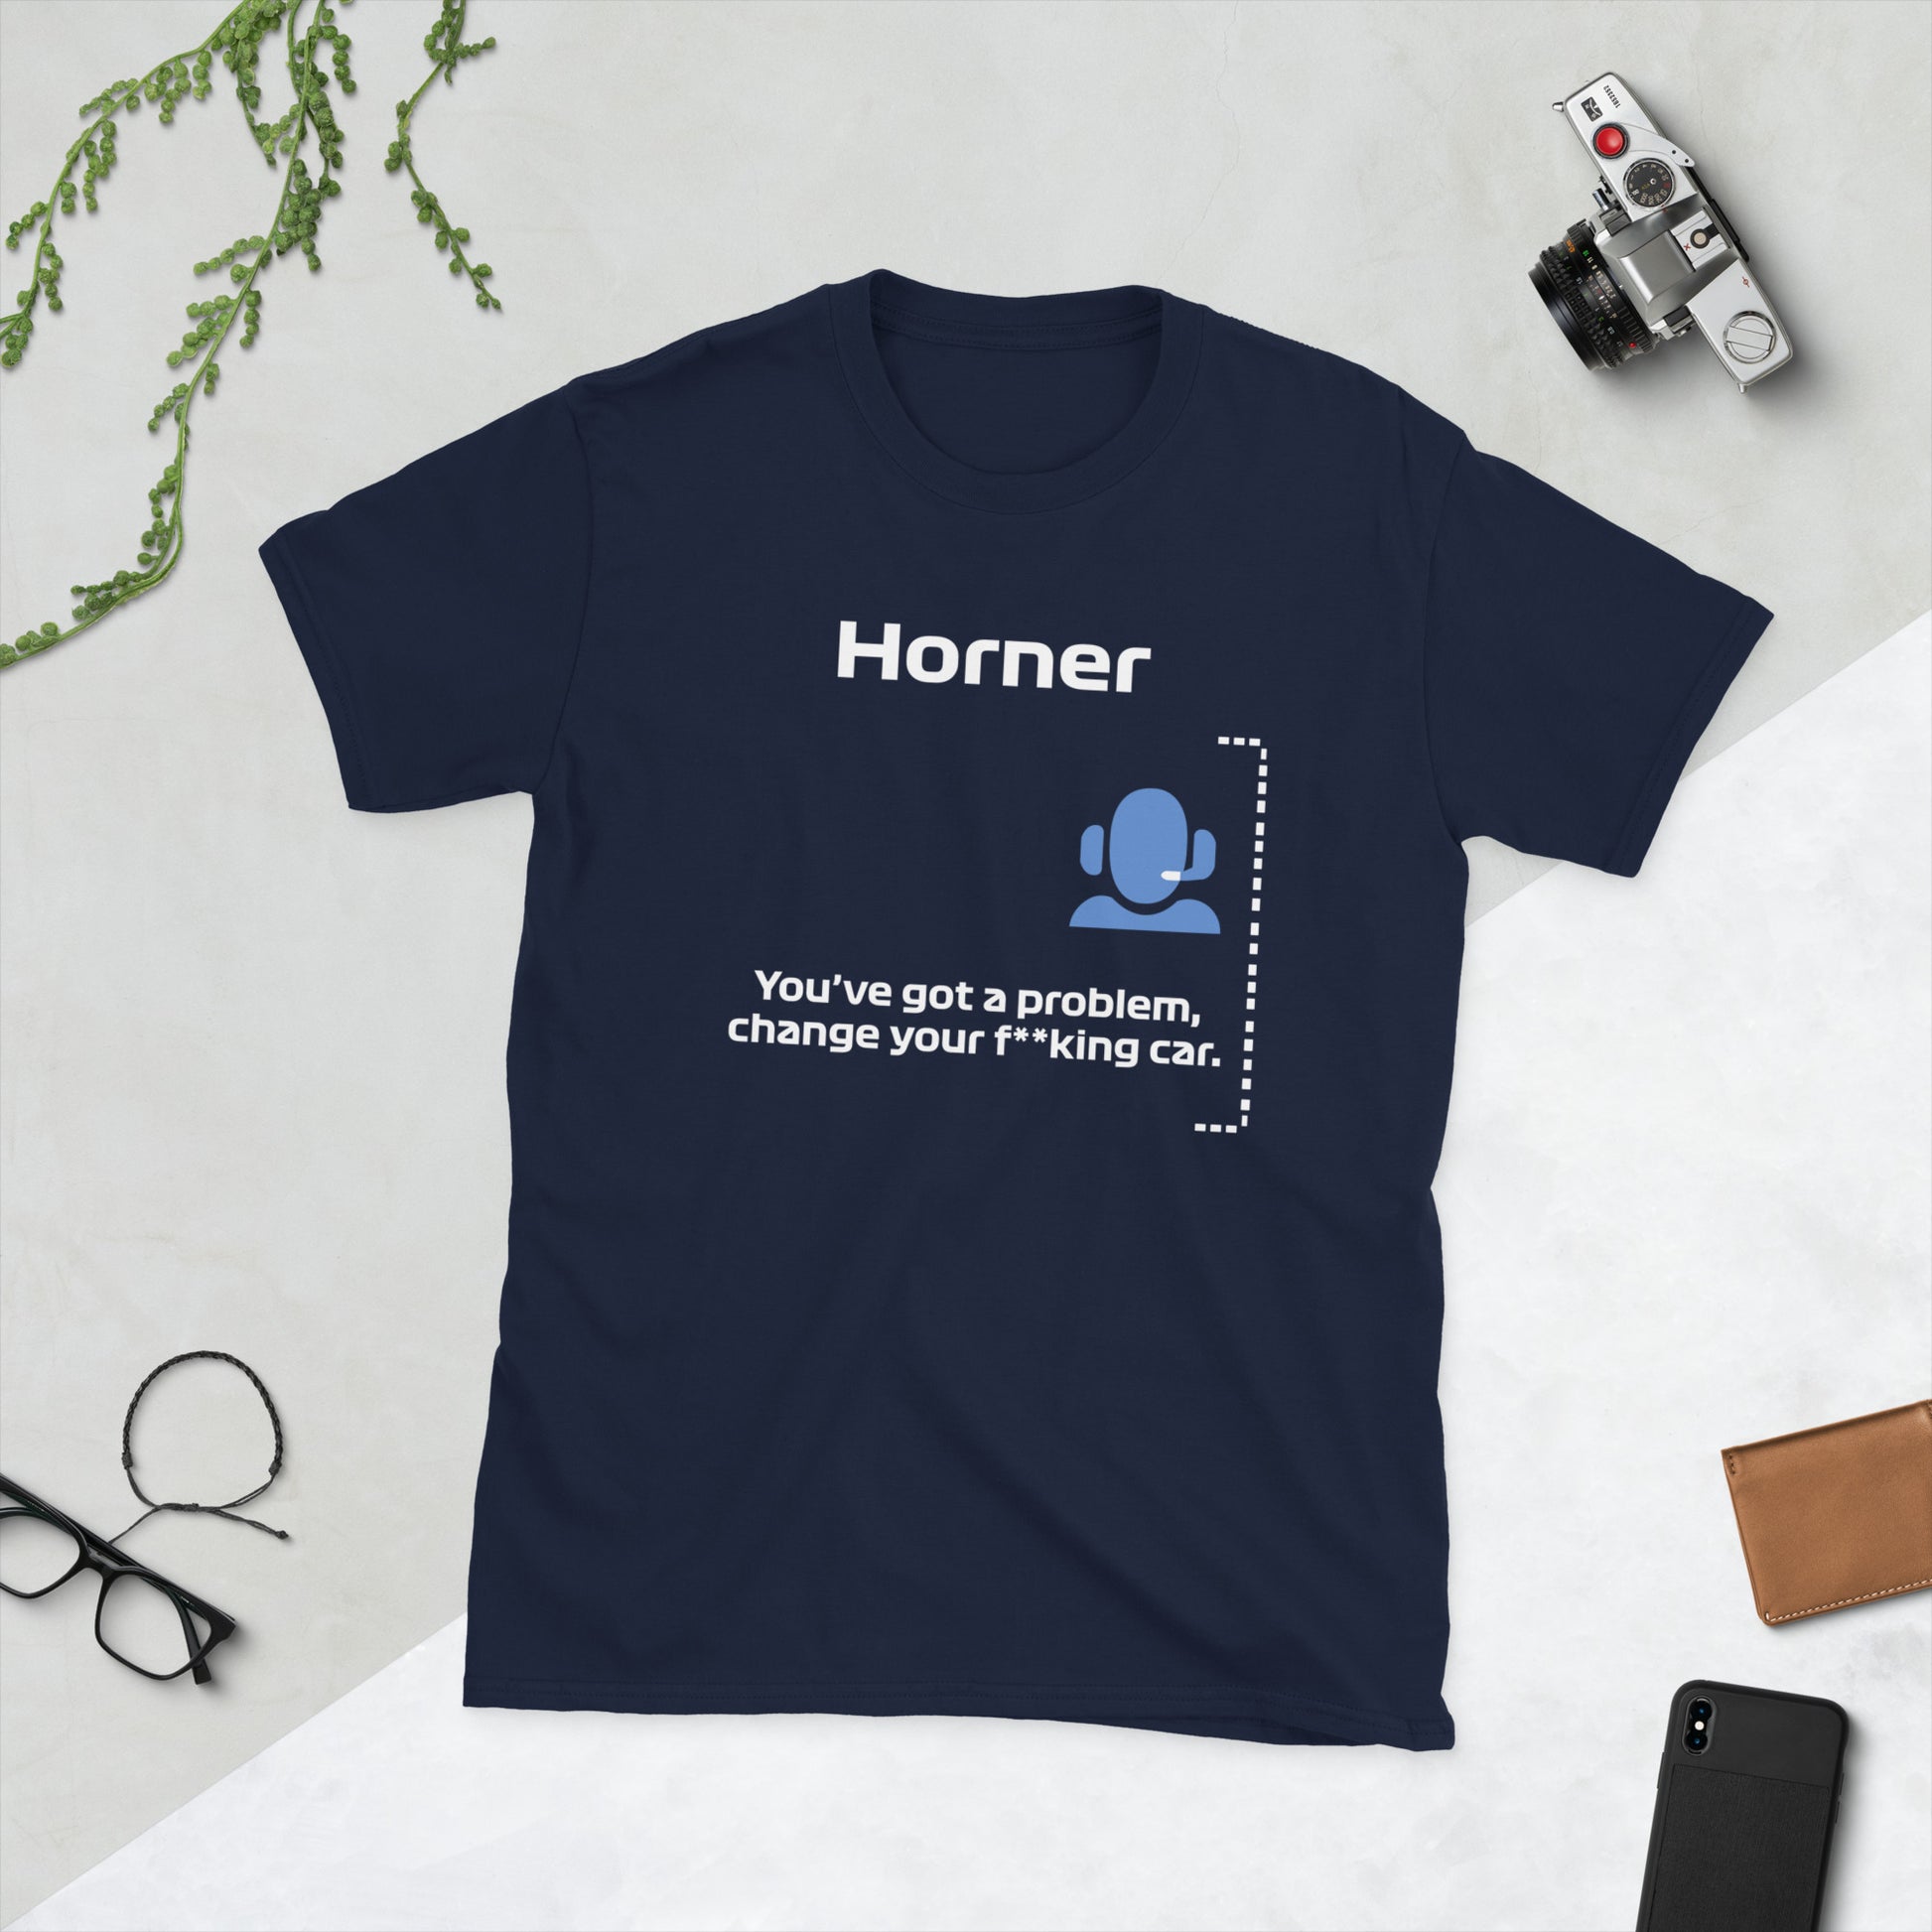 Christian Horner Change Your F**king Car Unisex T-Shirt Navy